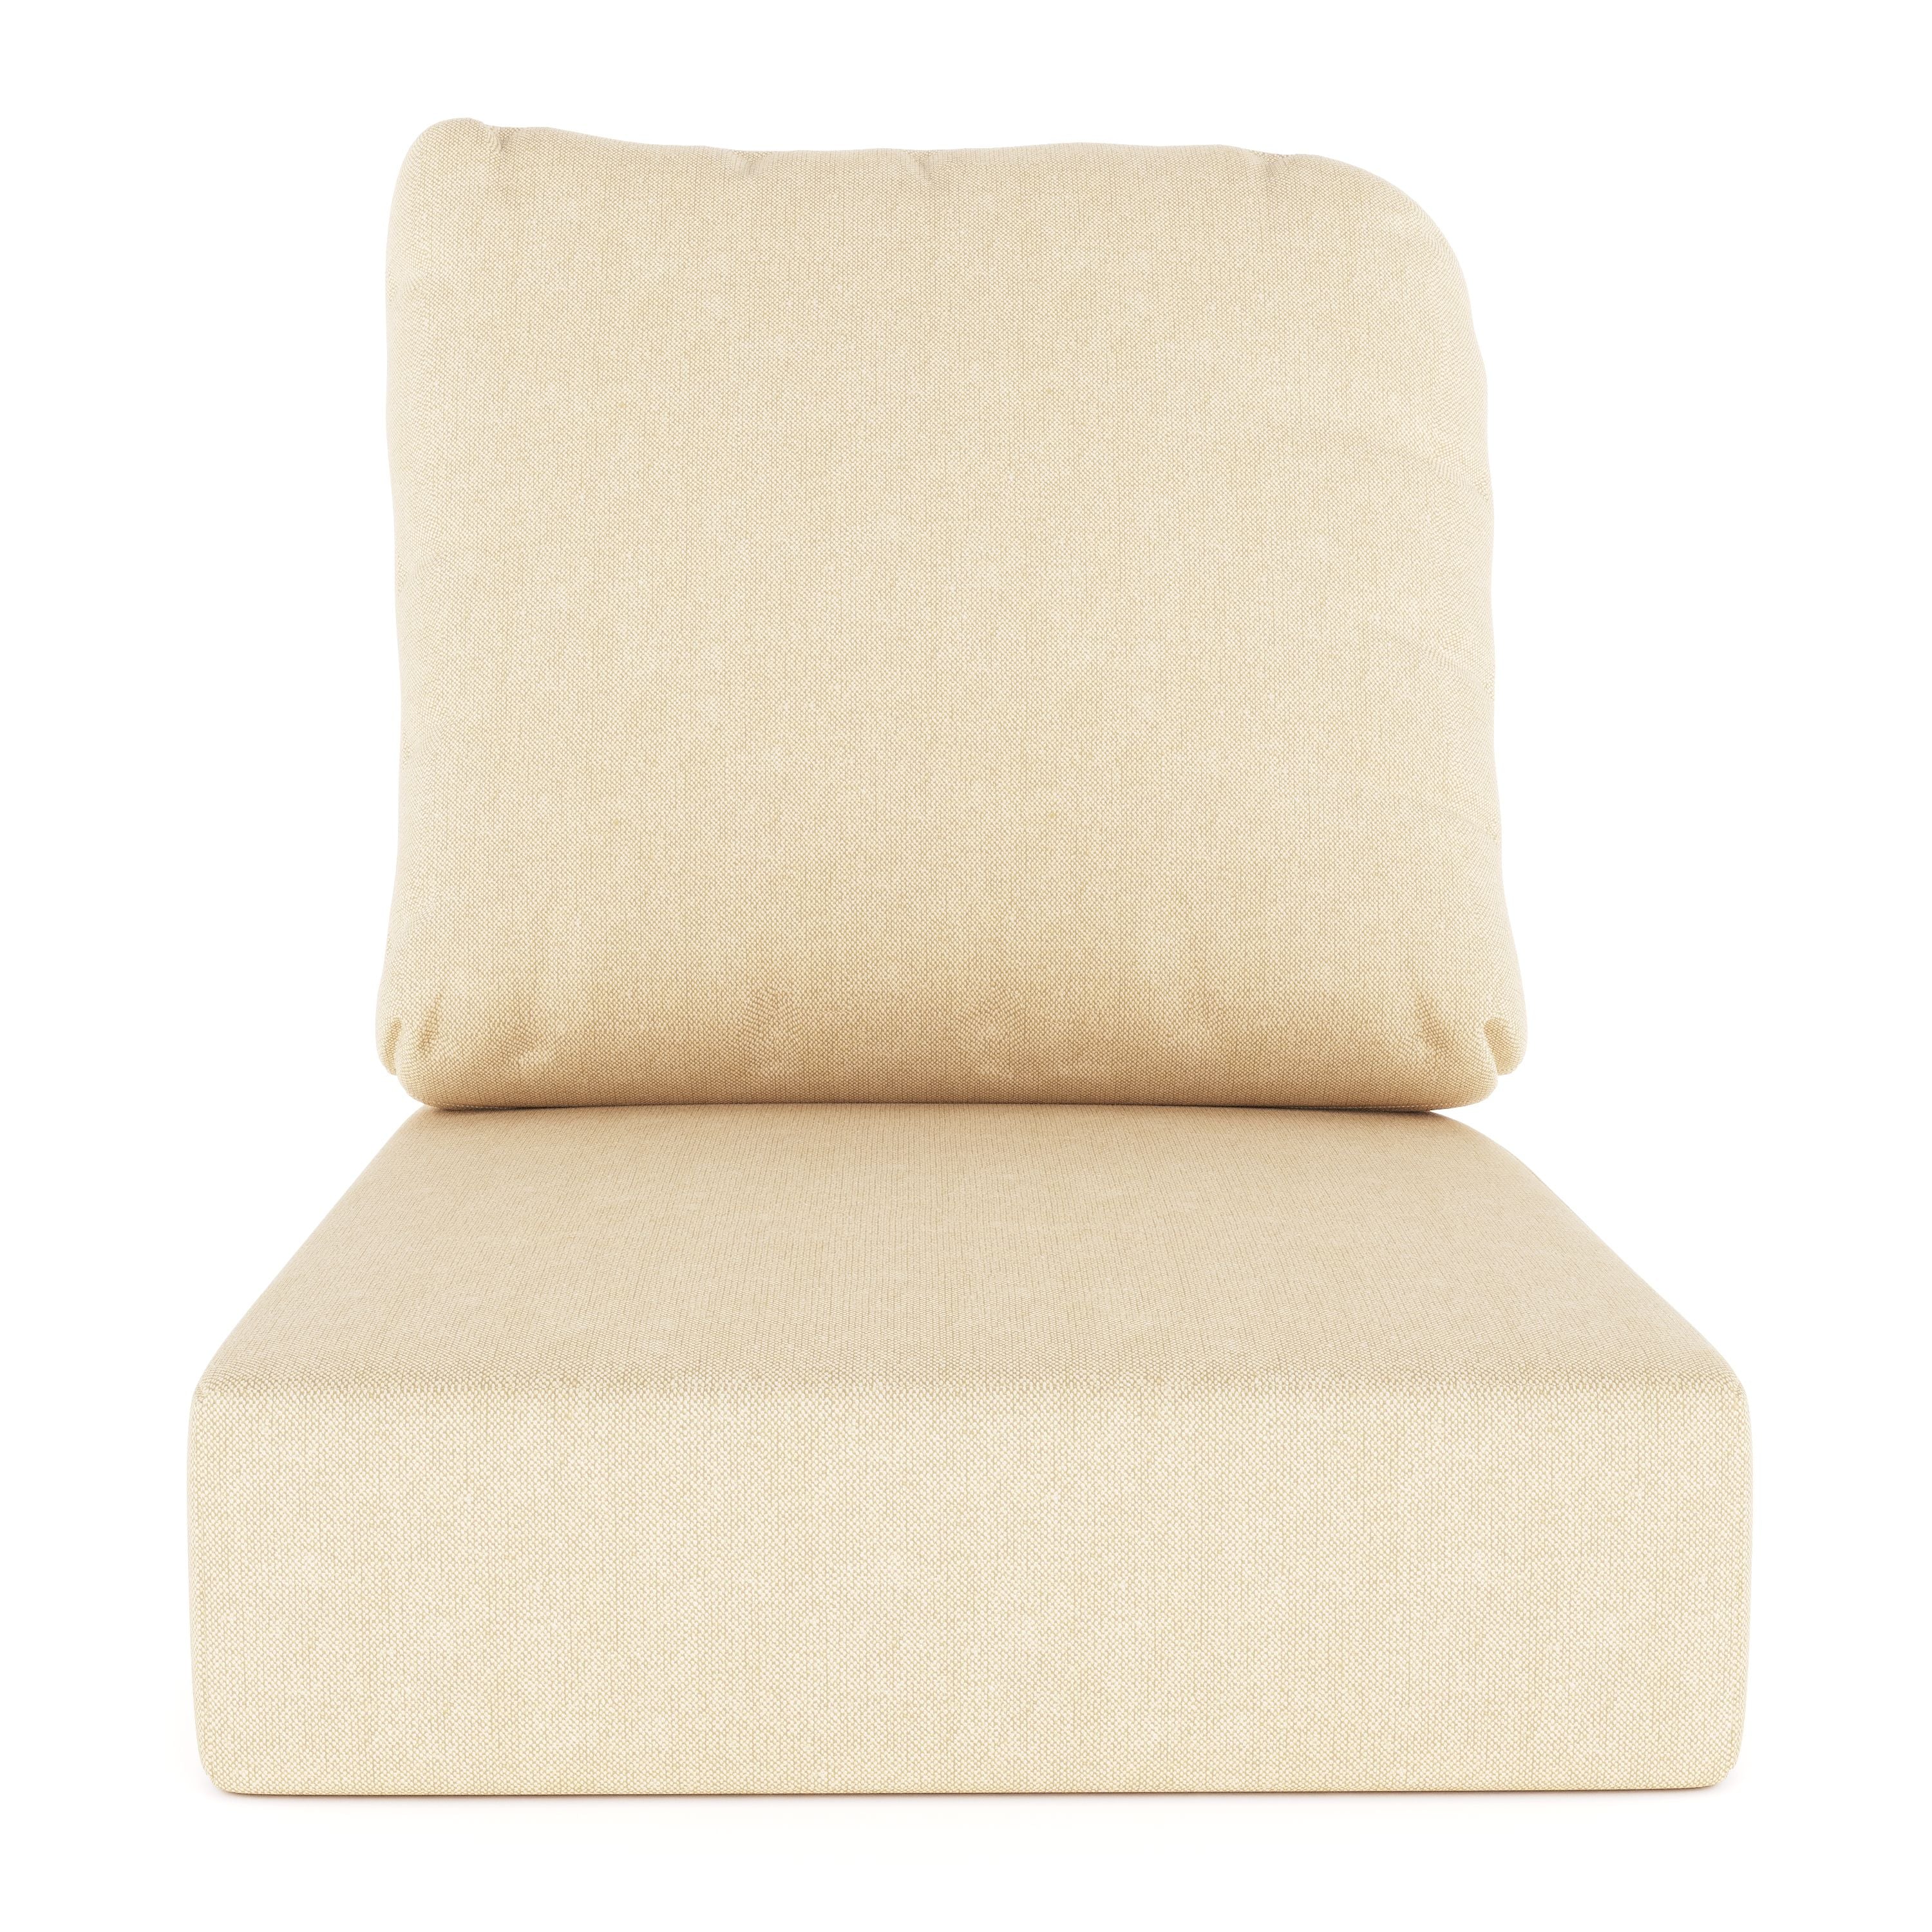 Asiento y respaldo/sofá de asiento profundo/extremos de loveseat derecho e izquierdo - Cojines de repuesto